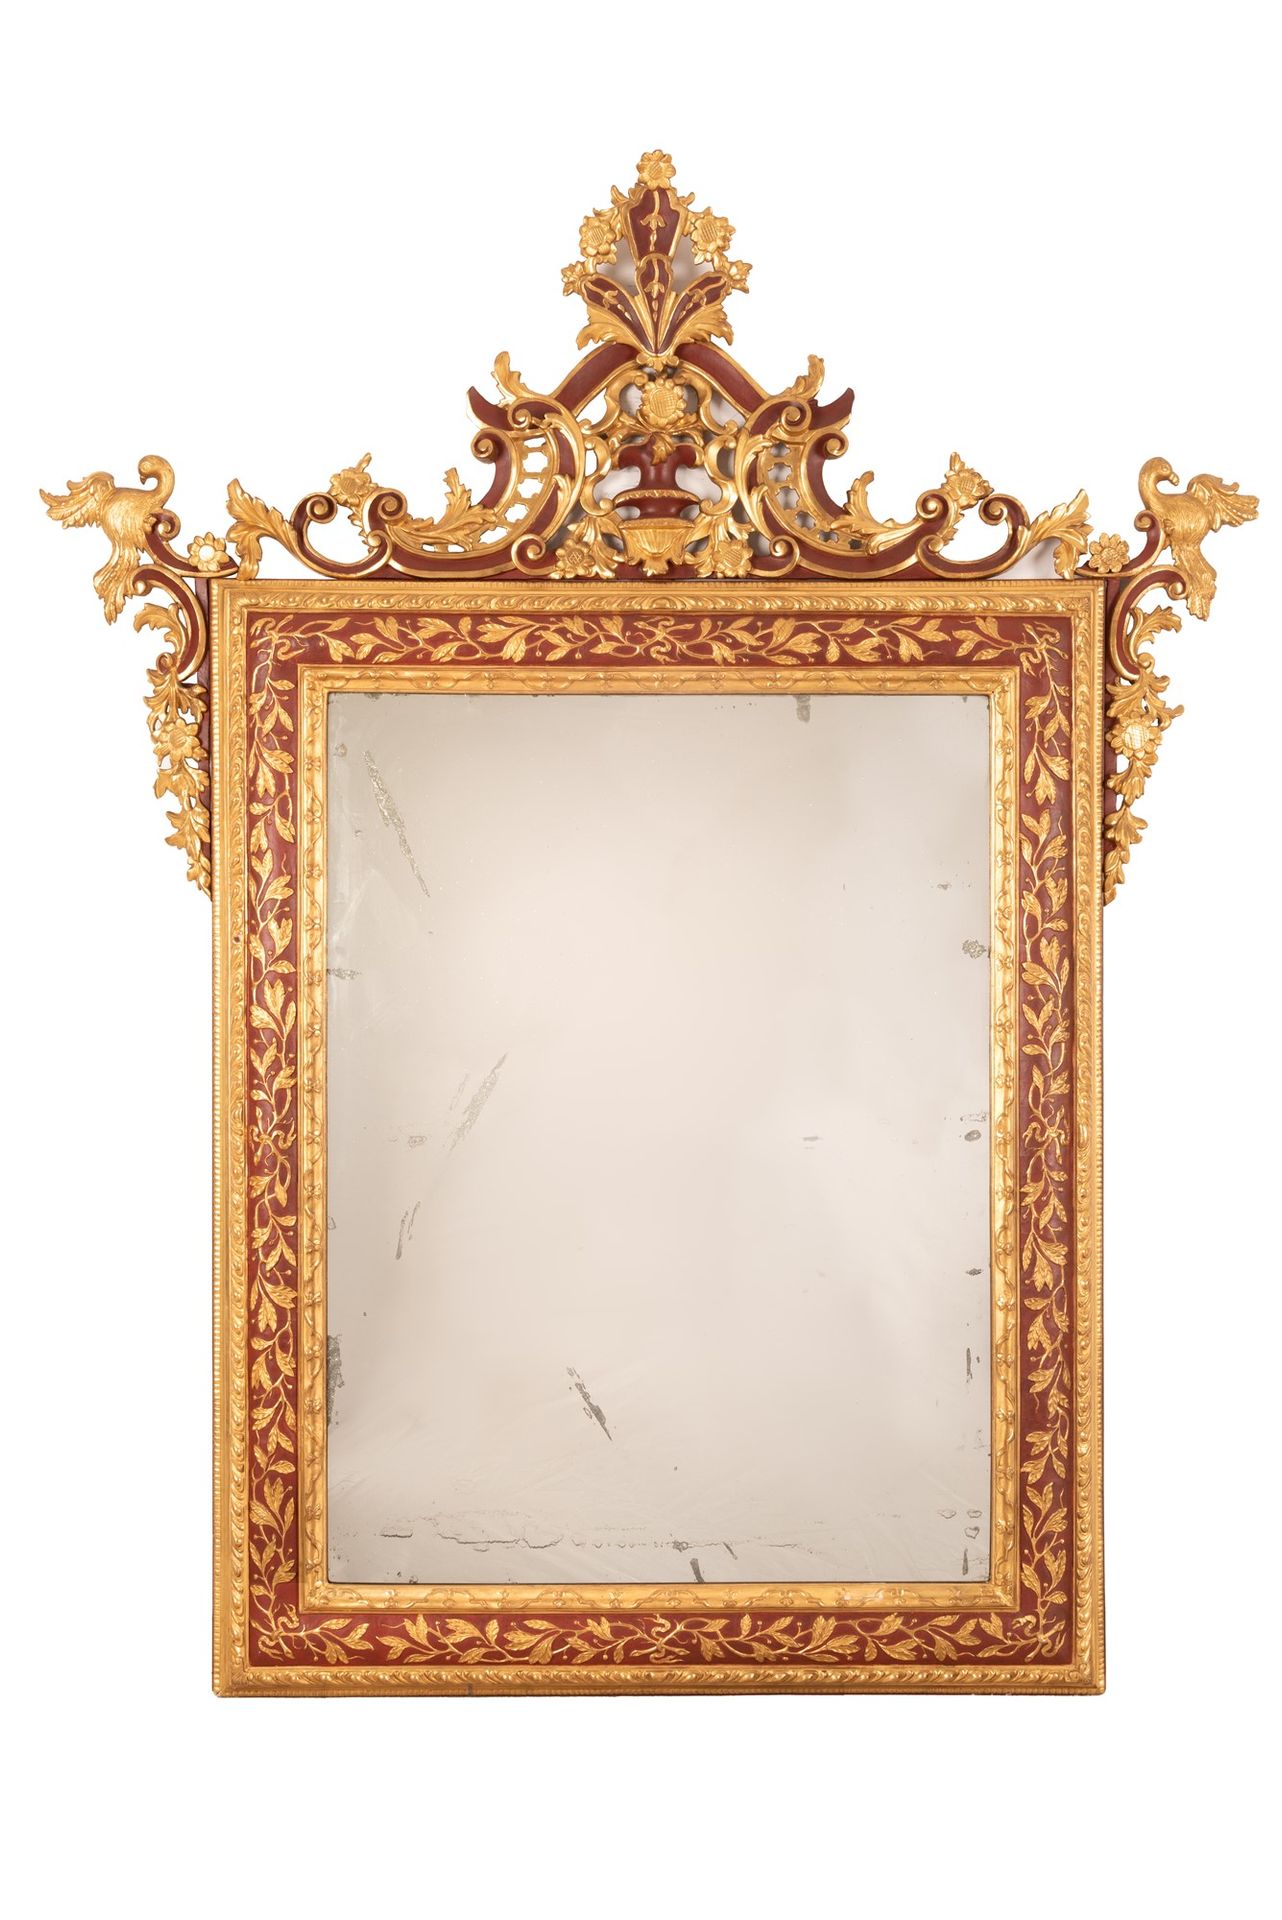 Antica specchiera in legno dorato e lacca rossa 175x141 cm; luz interior 101x76 &hellip;